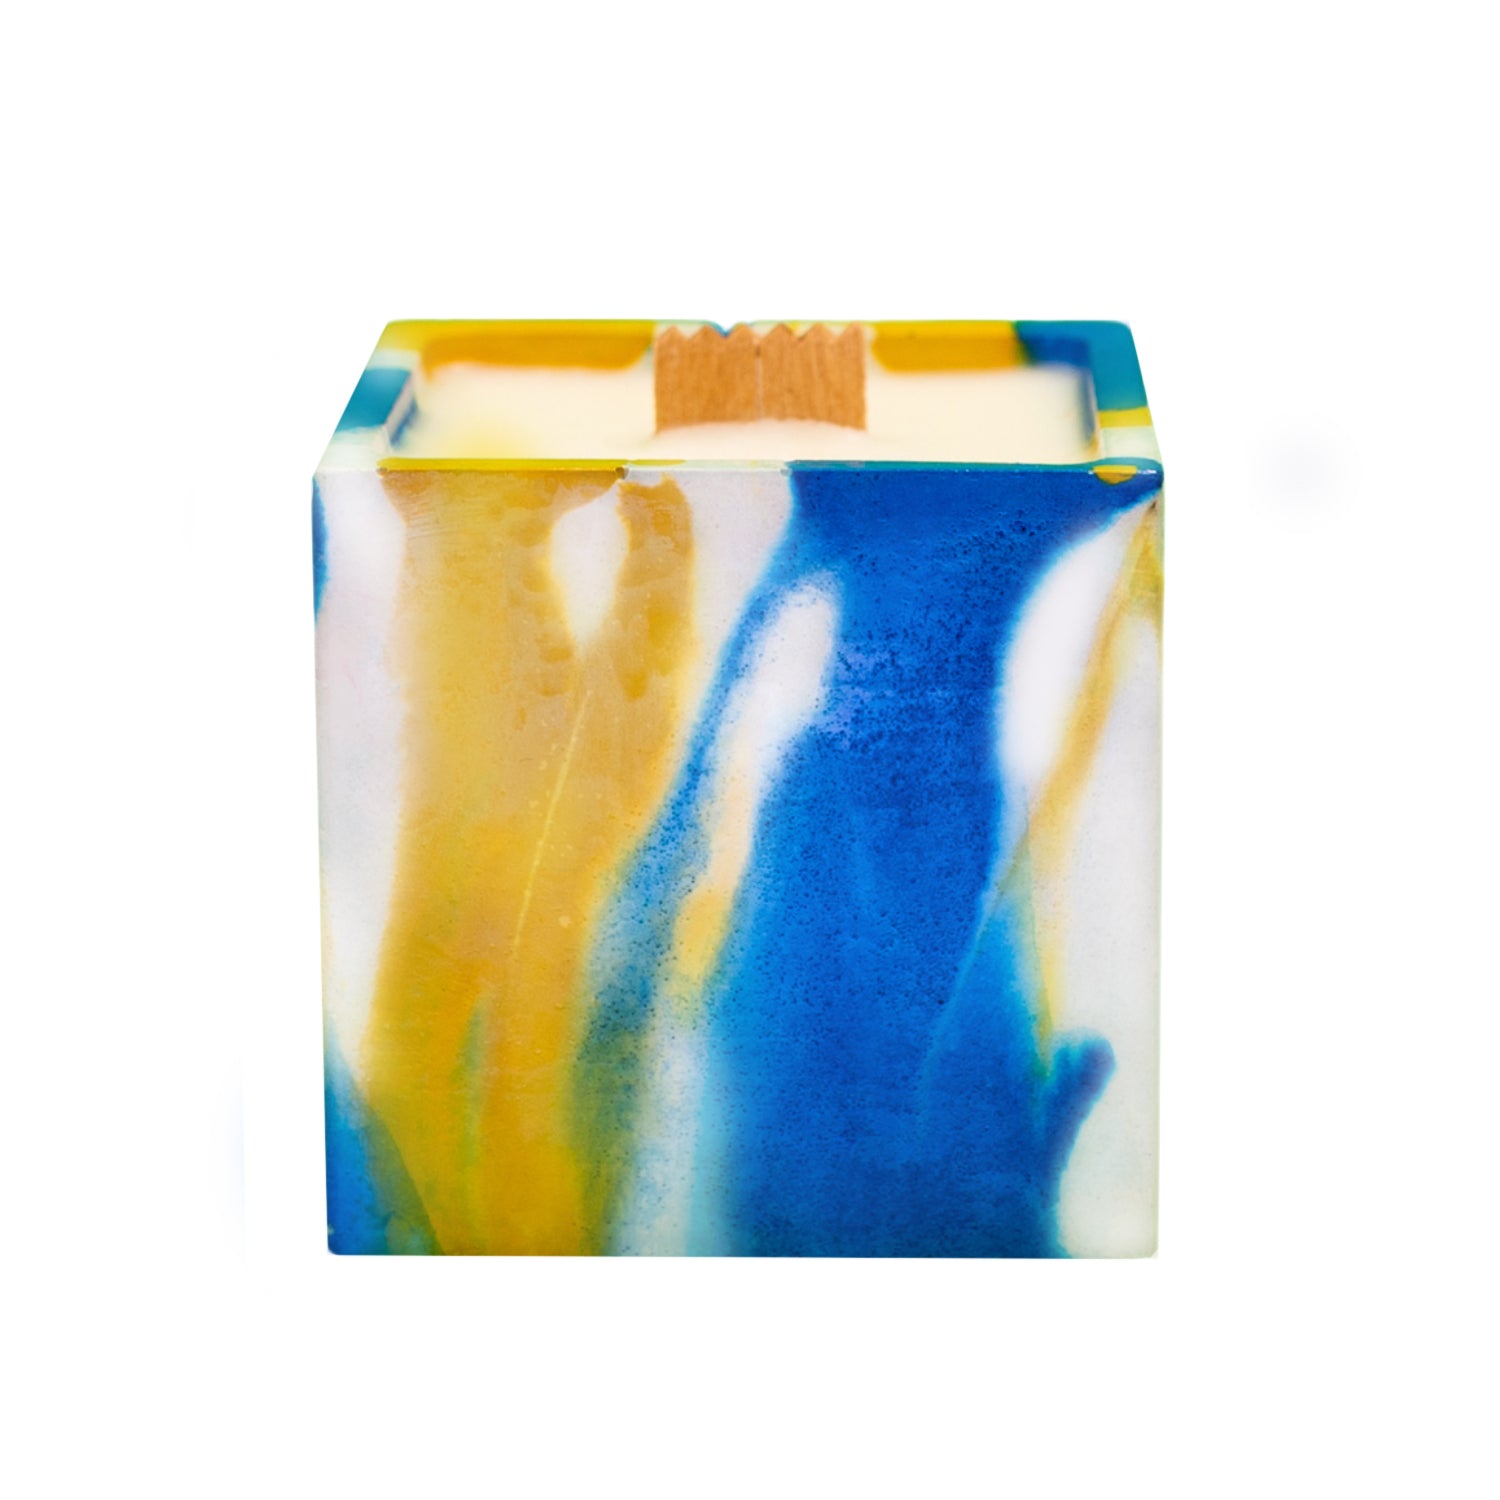 Bougie cube xxl - Béton Tie&Dye jaune et bleu